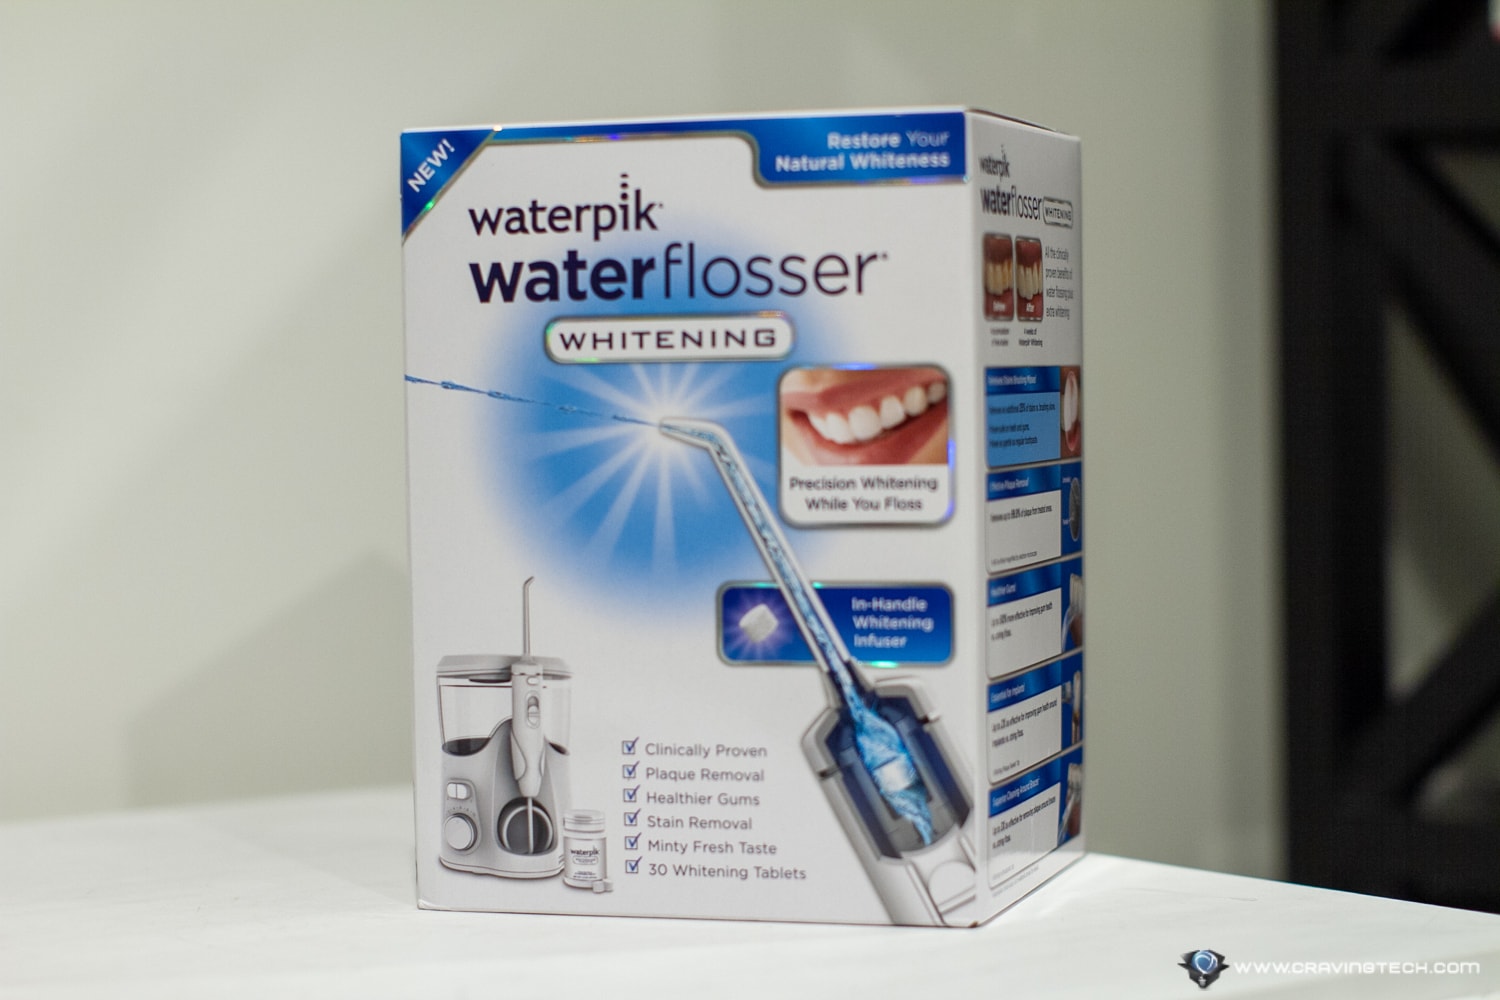 Waterpik Waterflosser Whitening Packaging and Unboxing